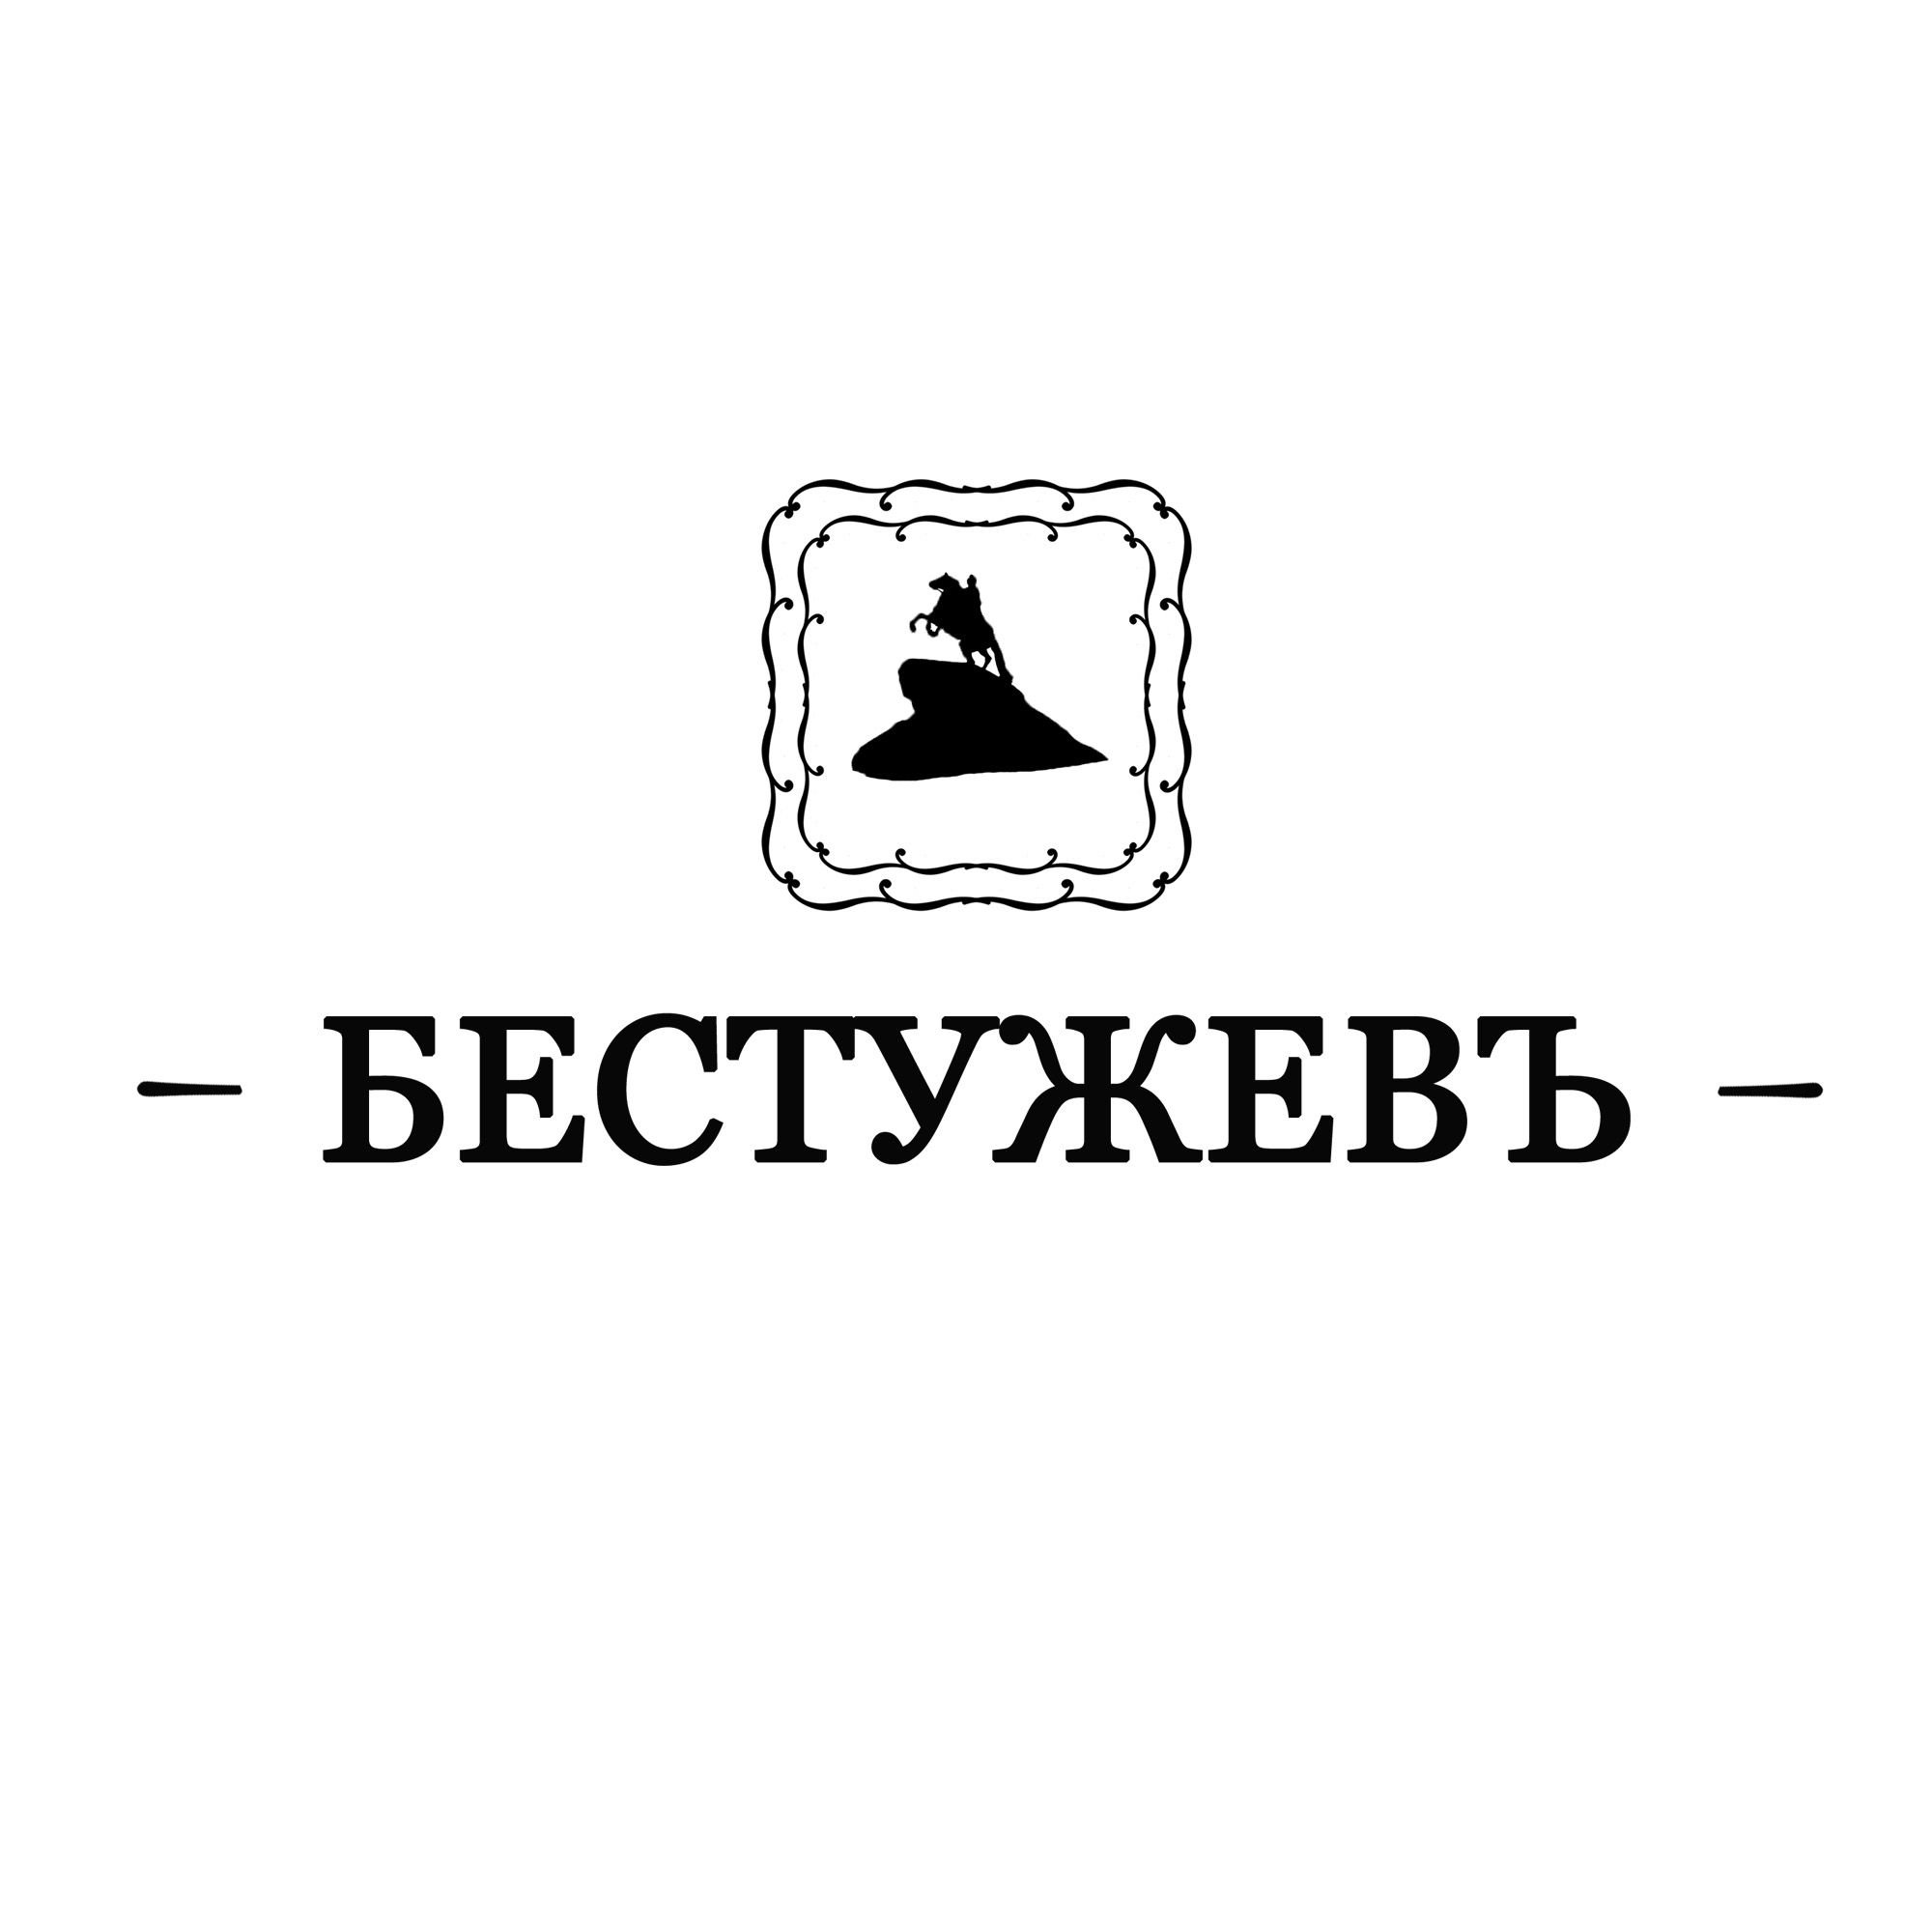 Логотип для ресторана 